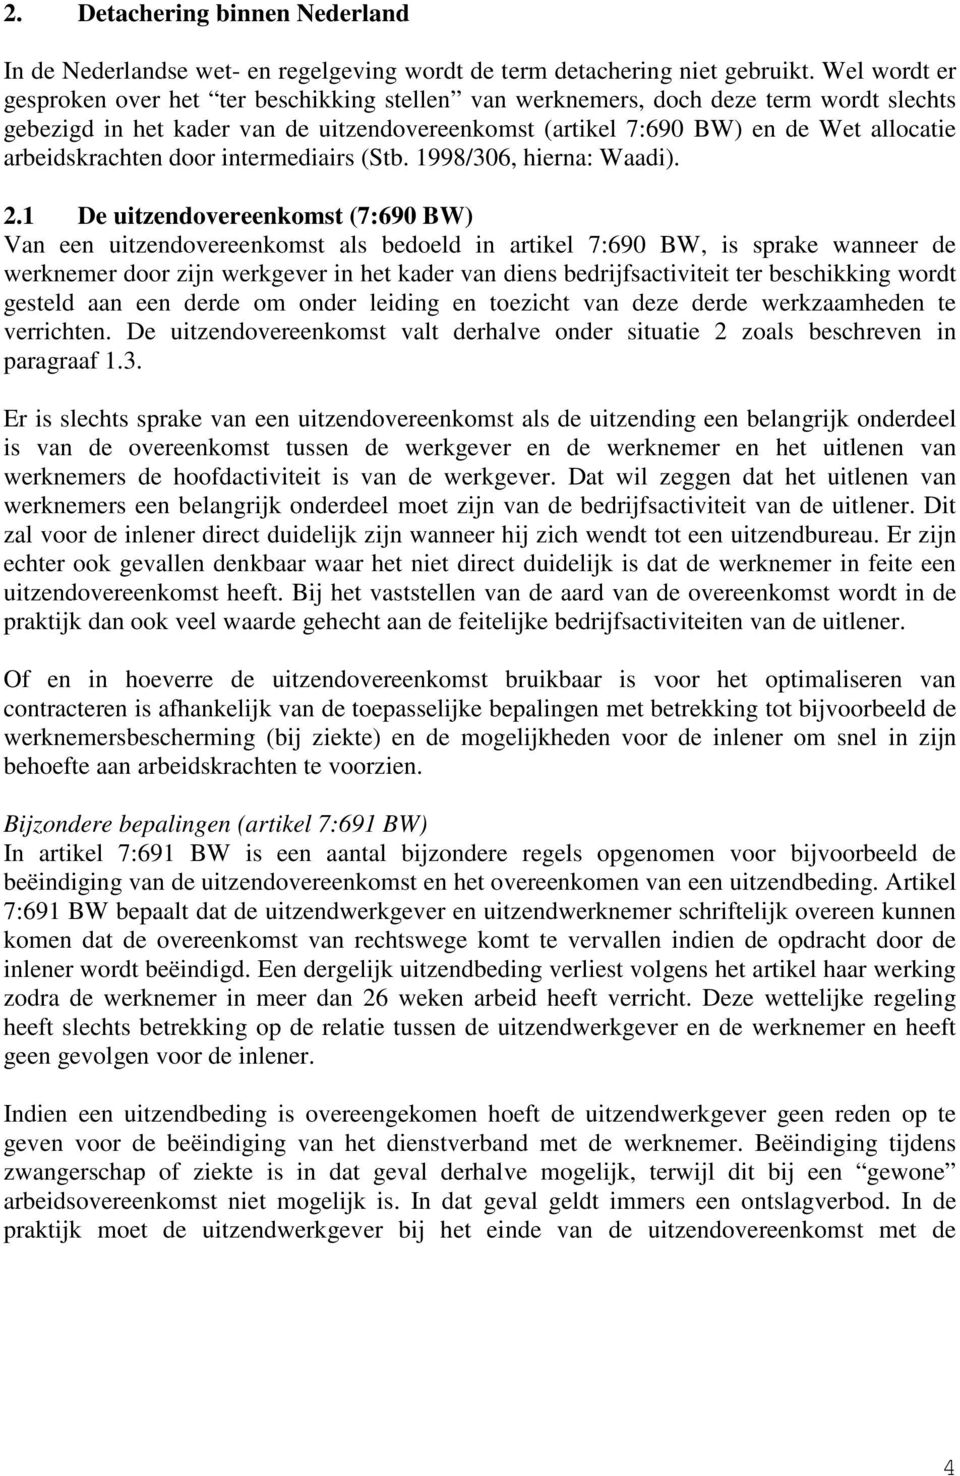 arbeidskrachten door intermediairs (Stb. 1998/306, hierna: Waadi). 2.